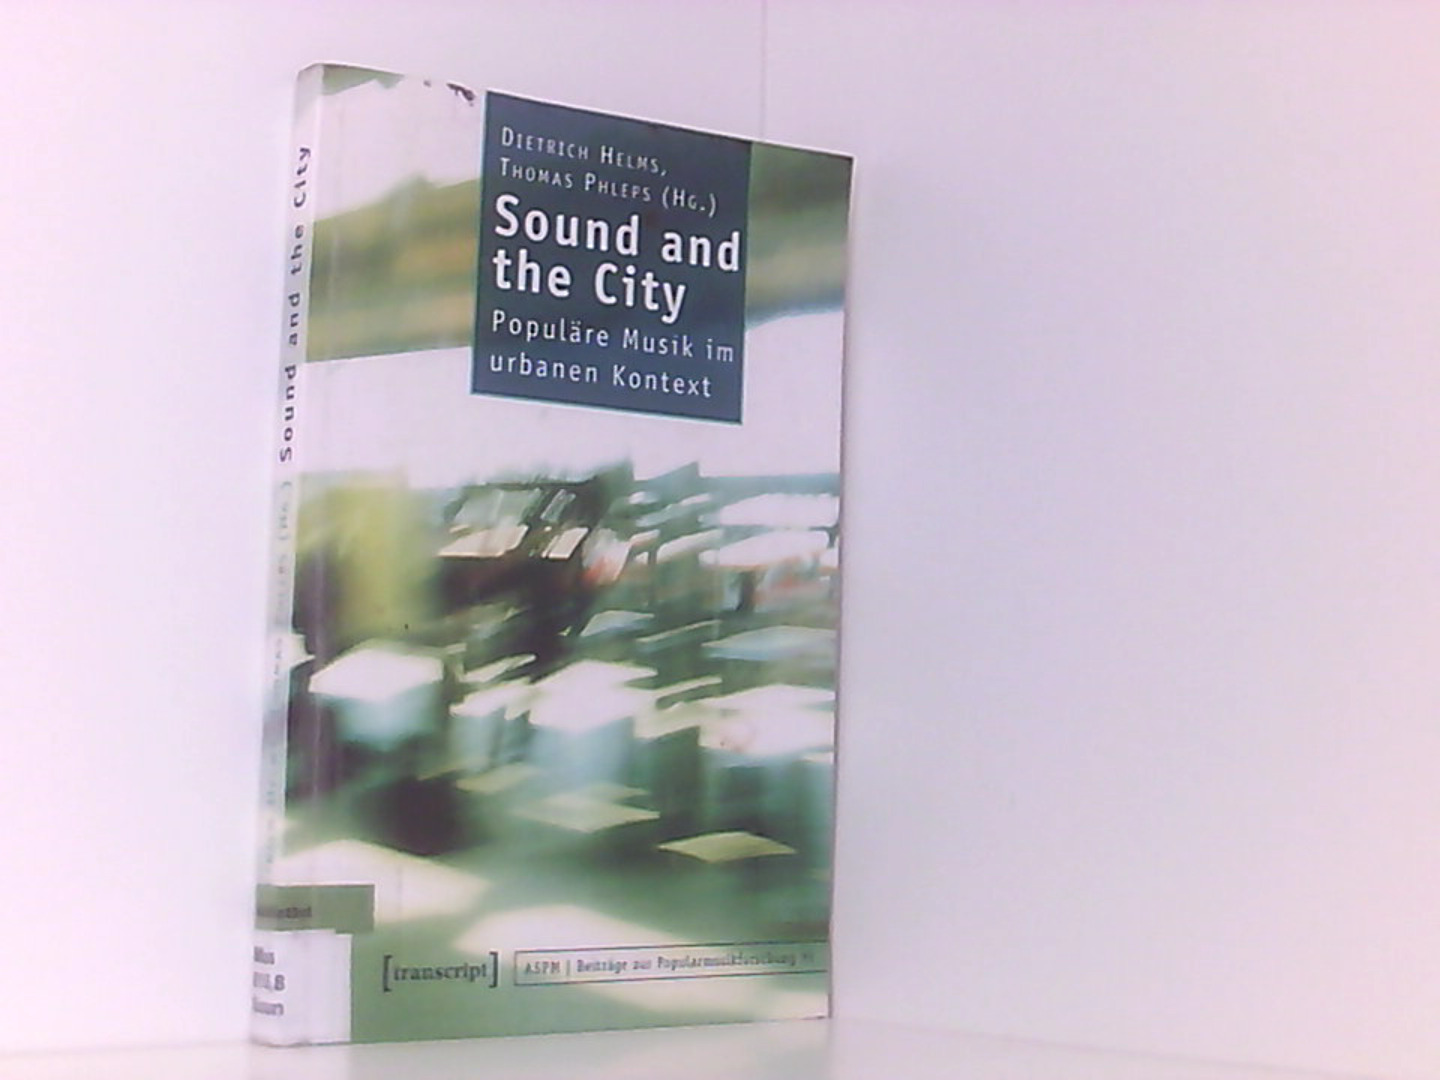 Sound and the City: Populäre Musik im urbanen Kontext (Beiträge zur Popularmusikforschung) - Helms, Dietrich und Thomas Phleps (verst.)